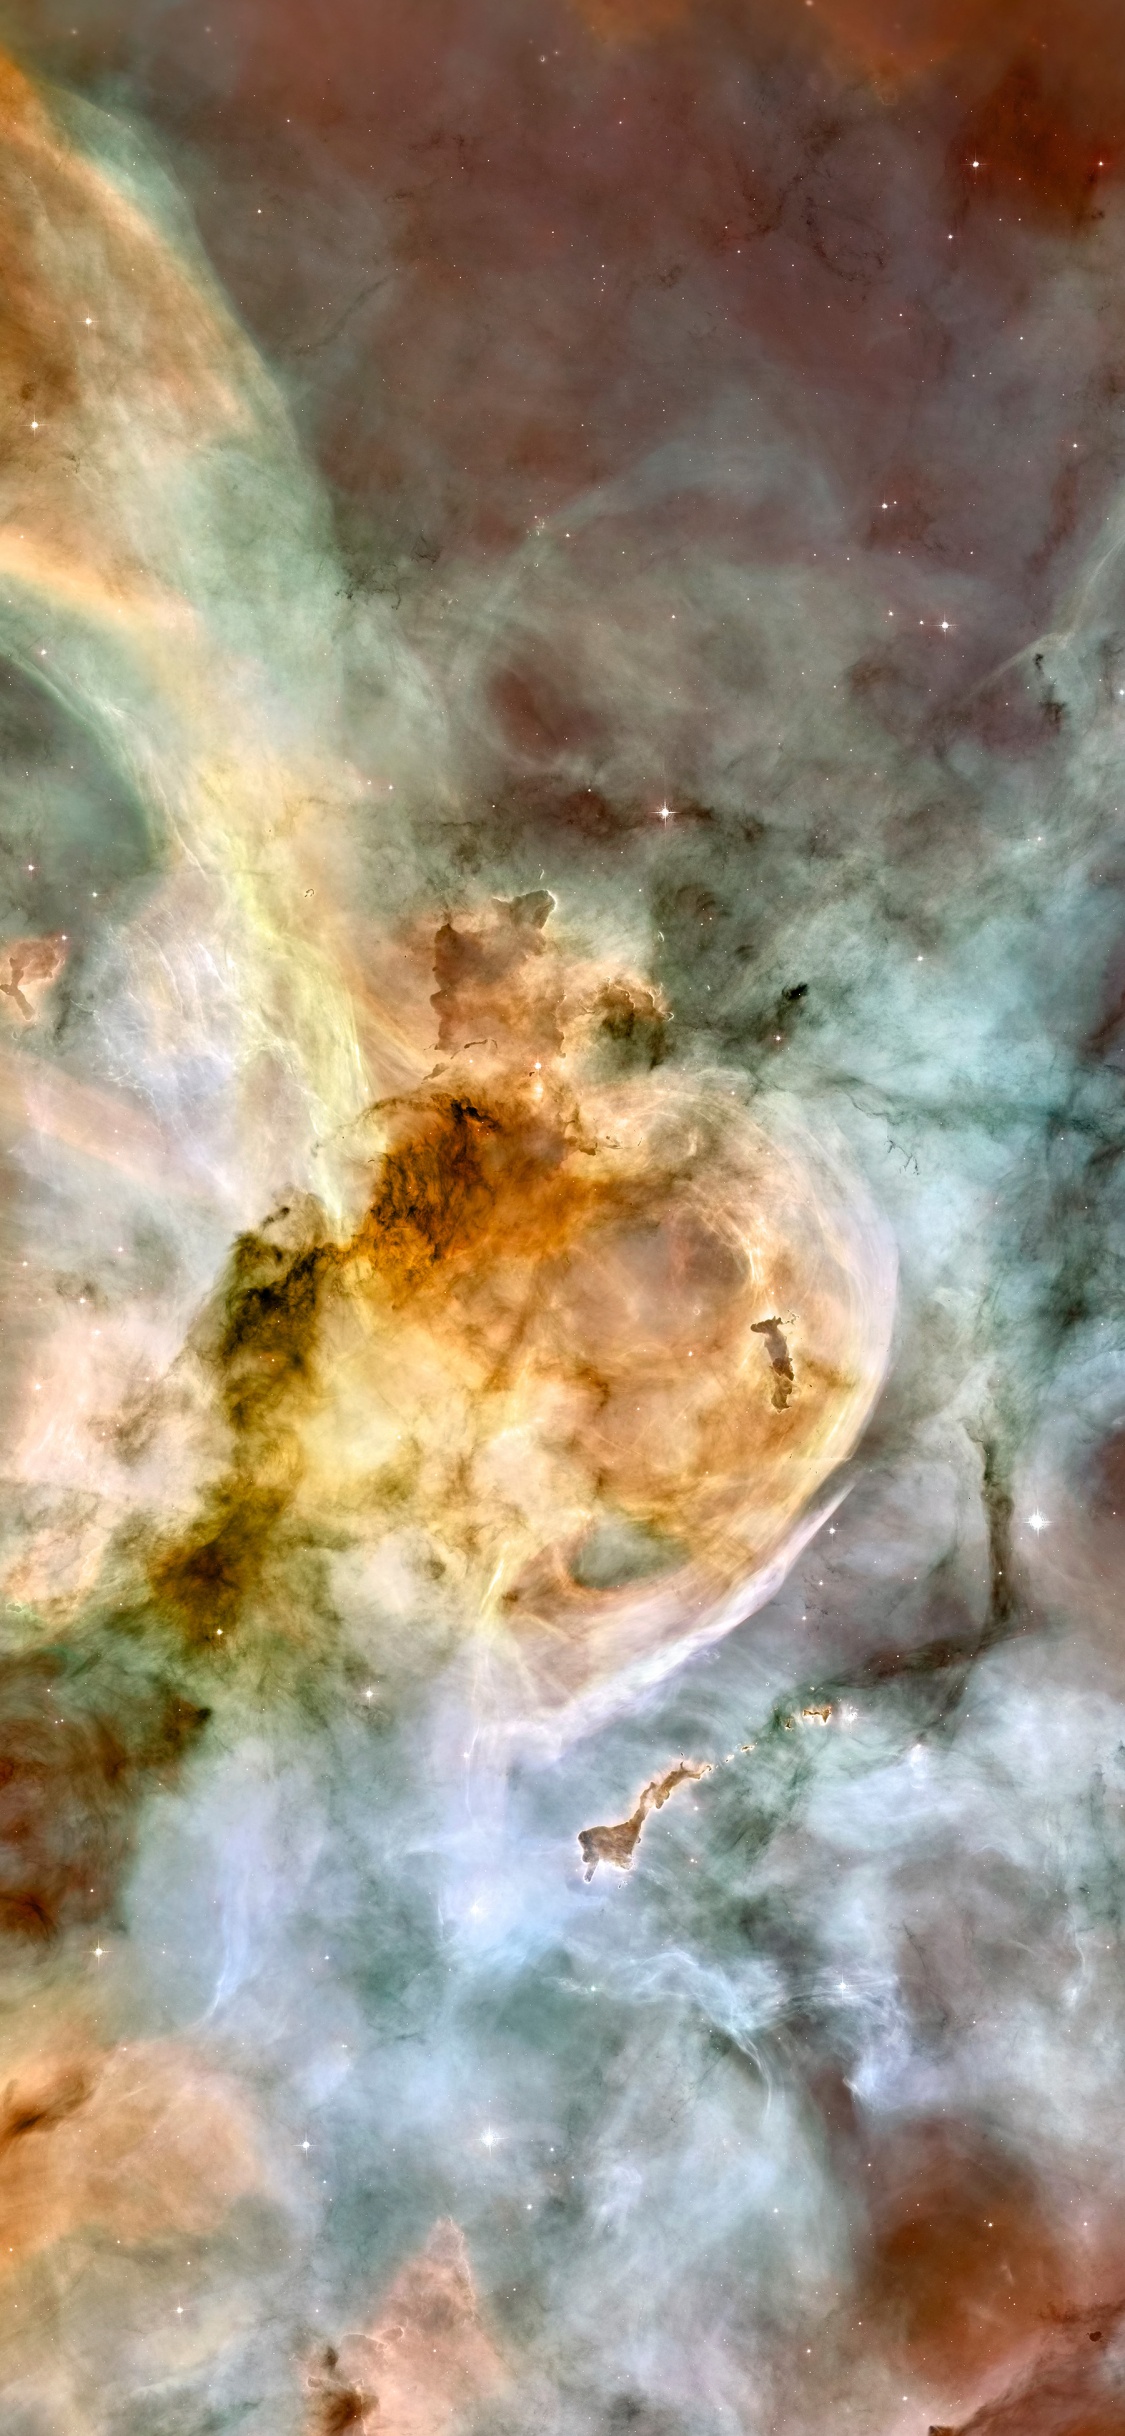 Carina星云, 哈勃太空望远镜, 明星, 空间, 天文学对象 壁纸 1125x2436 允许